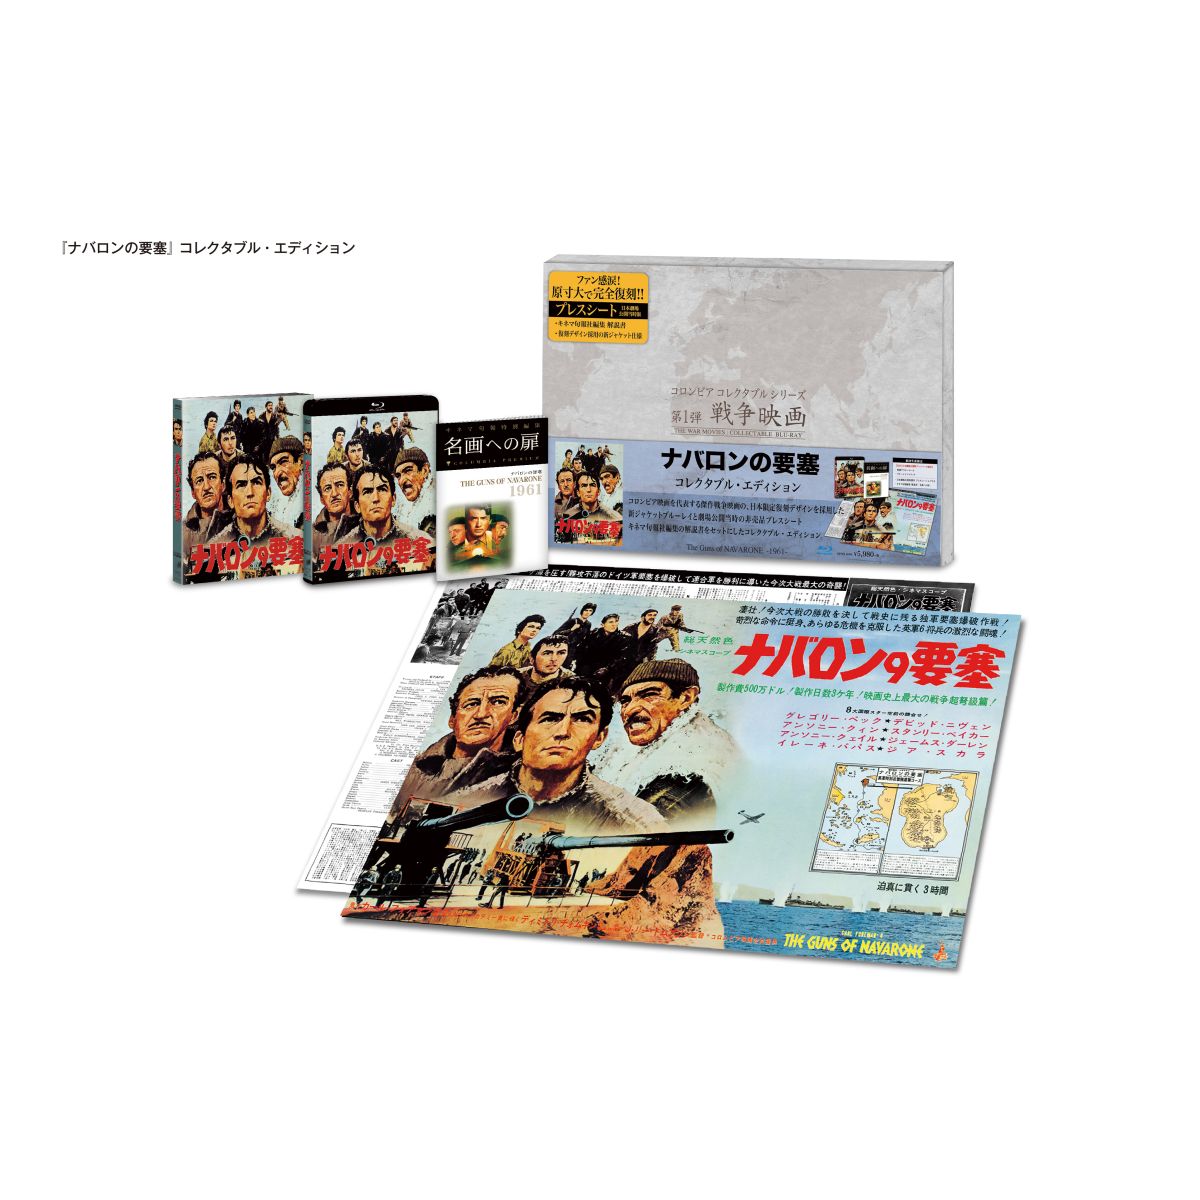 ナバロンの要塞 コレクタブル・エディション【初回生産限定】【Blu-ray】